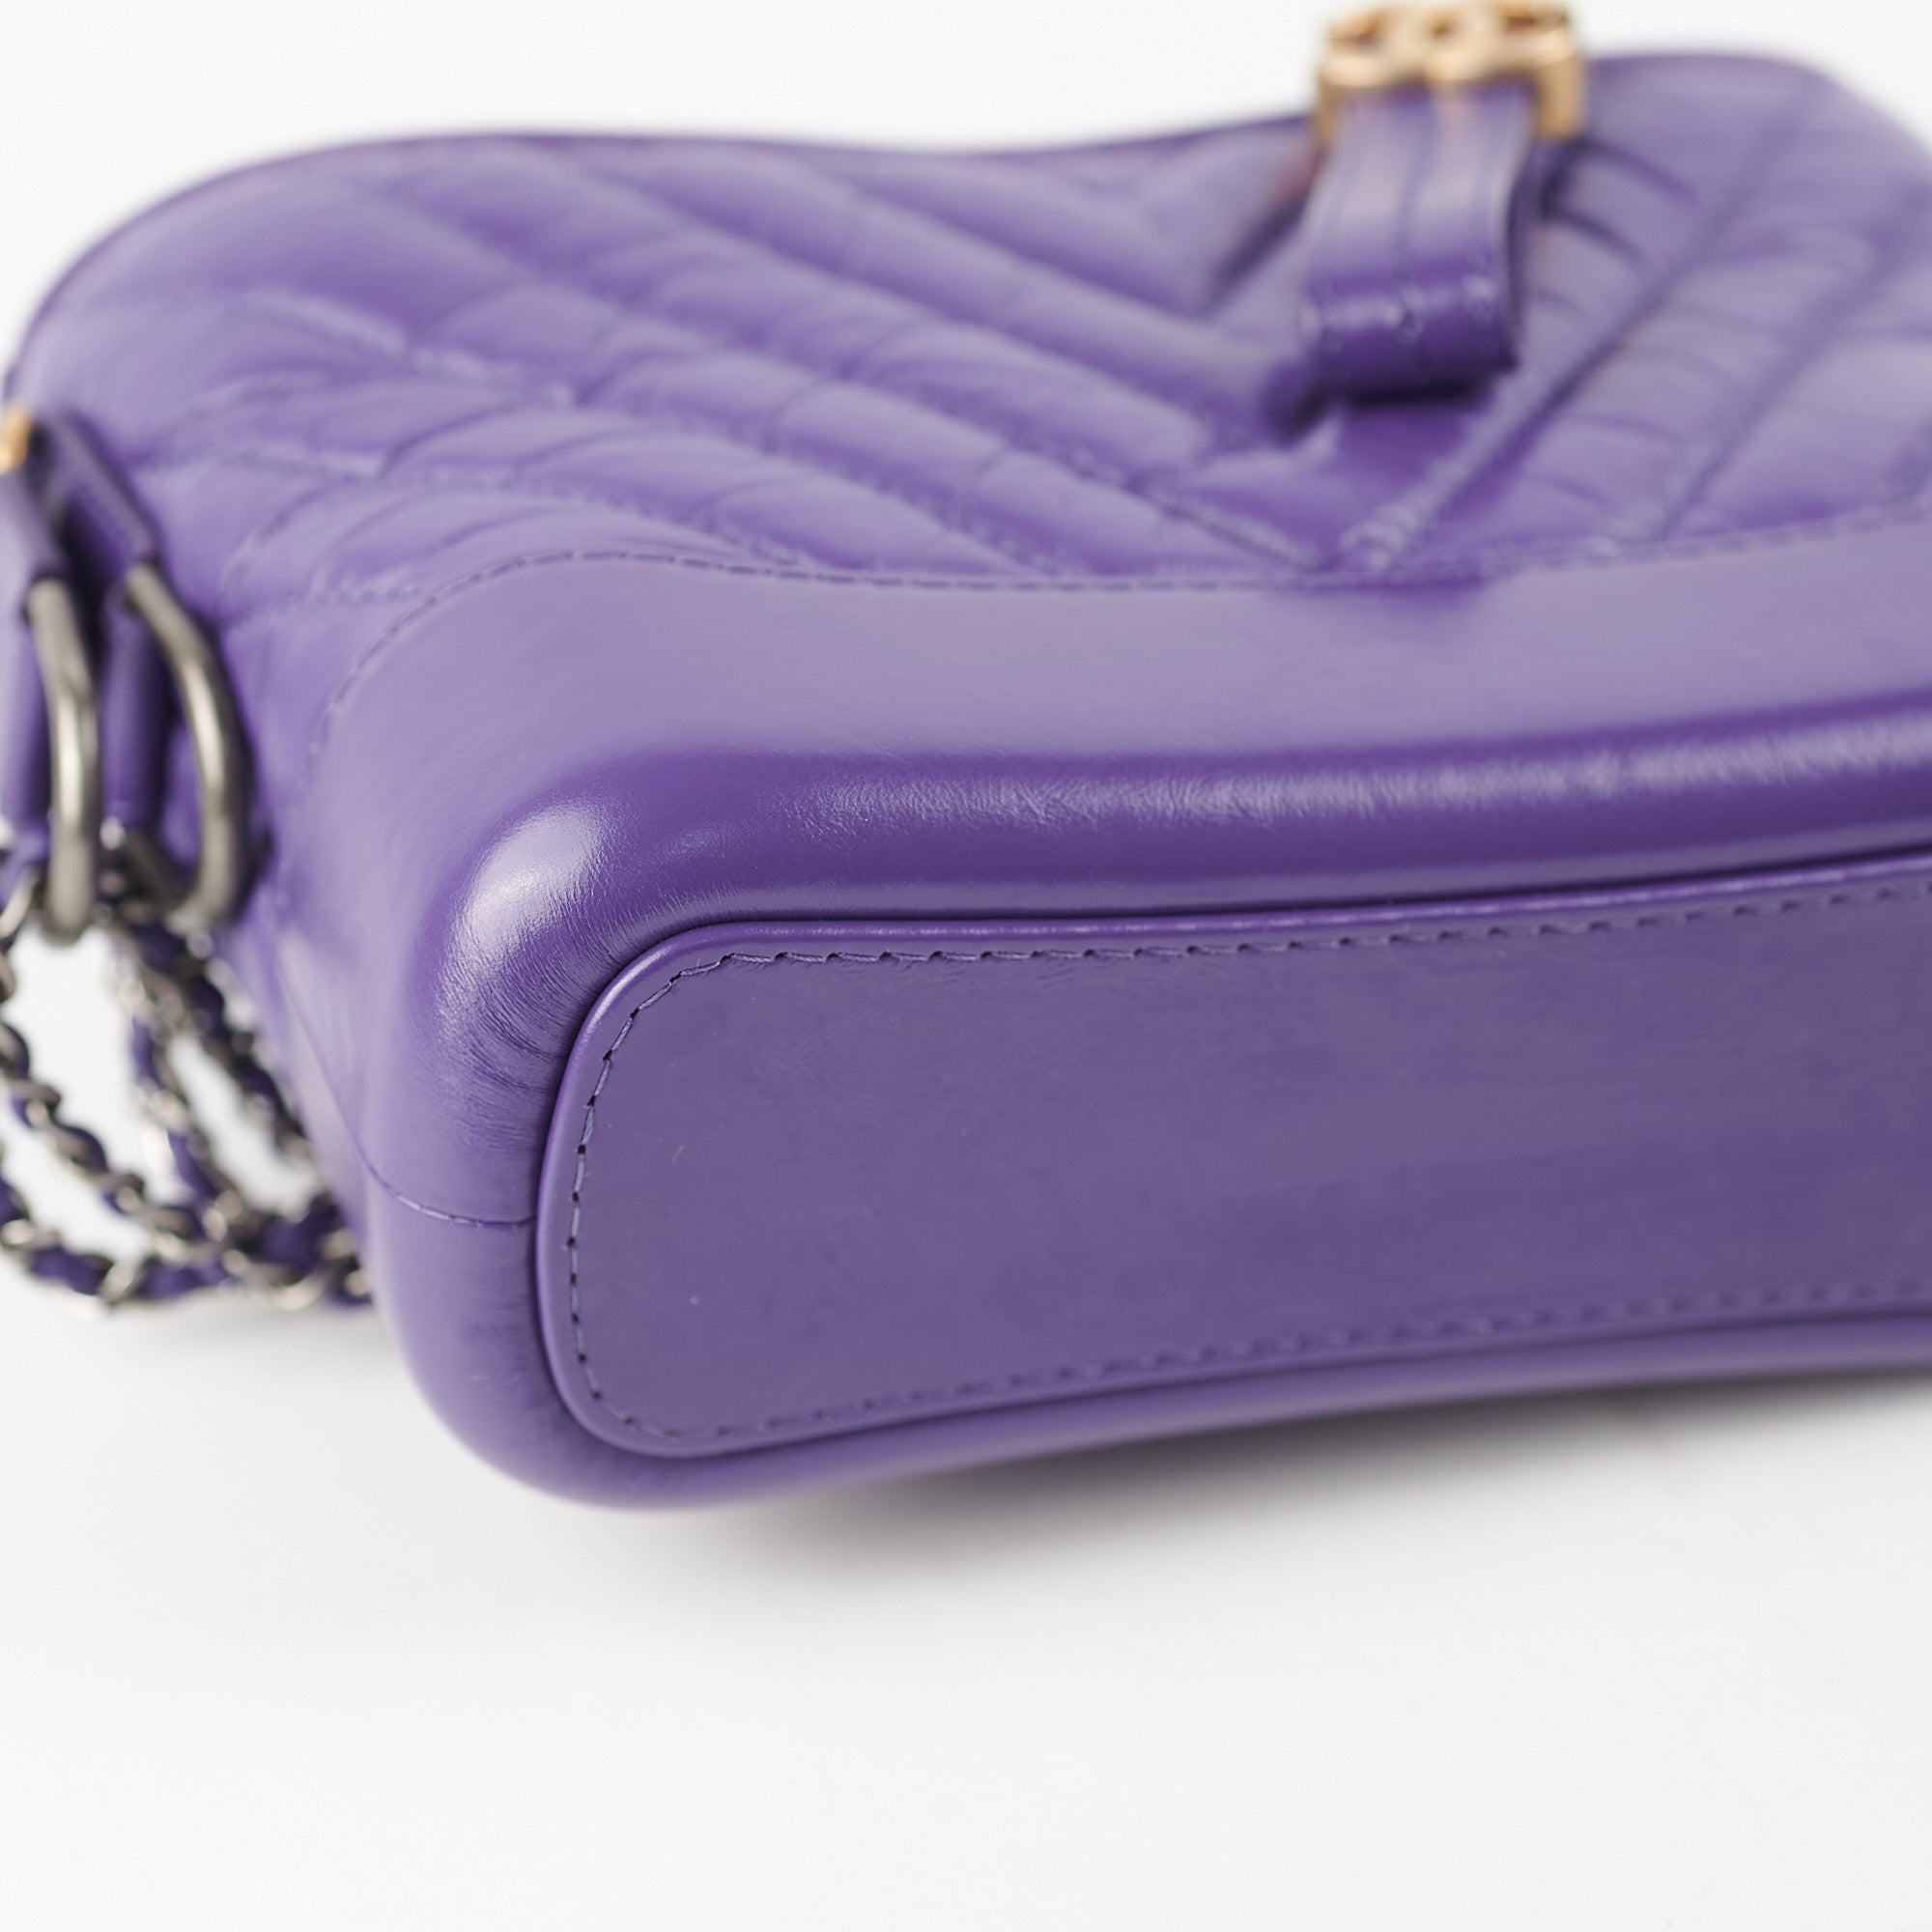 chanel purple gabrielle bag｜TikTok Search